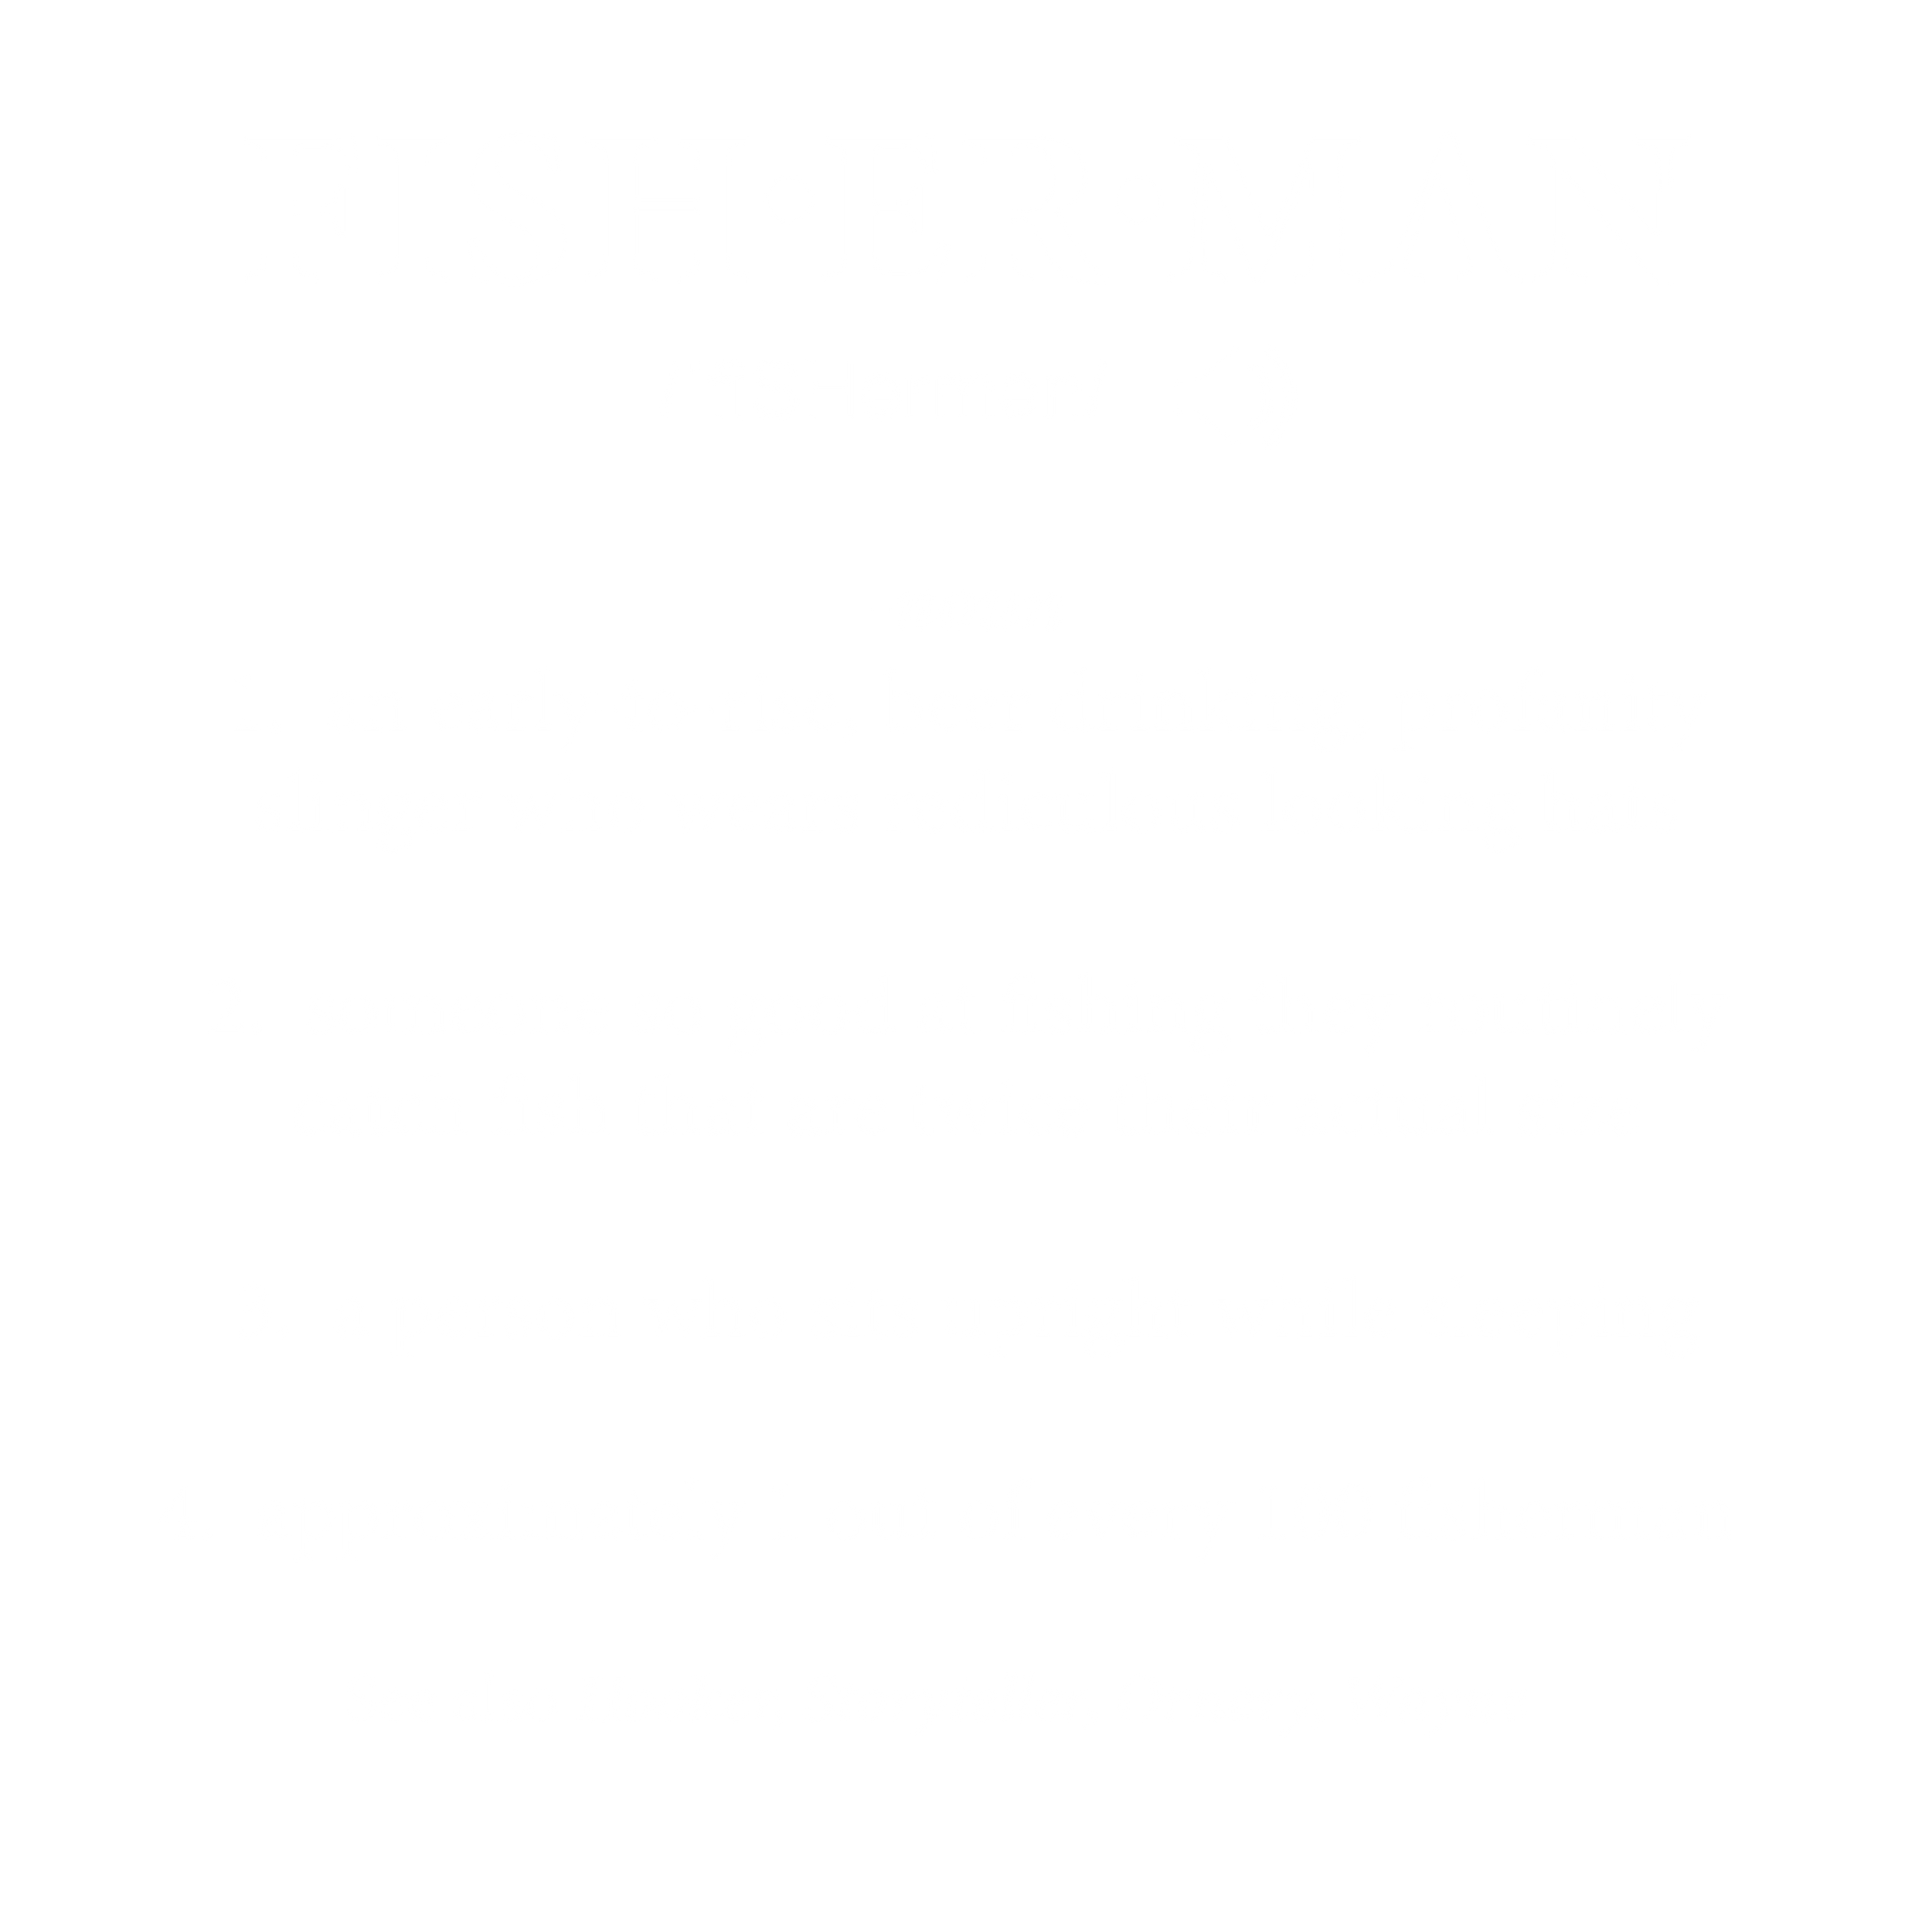 Fisherman DTF Transfer